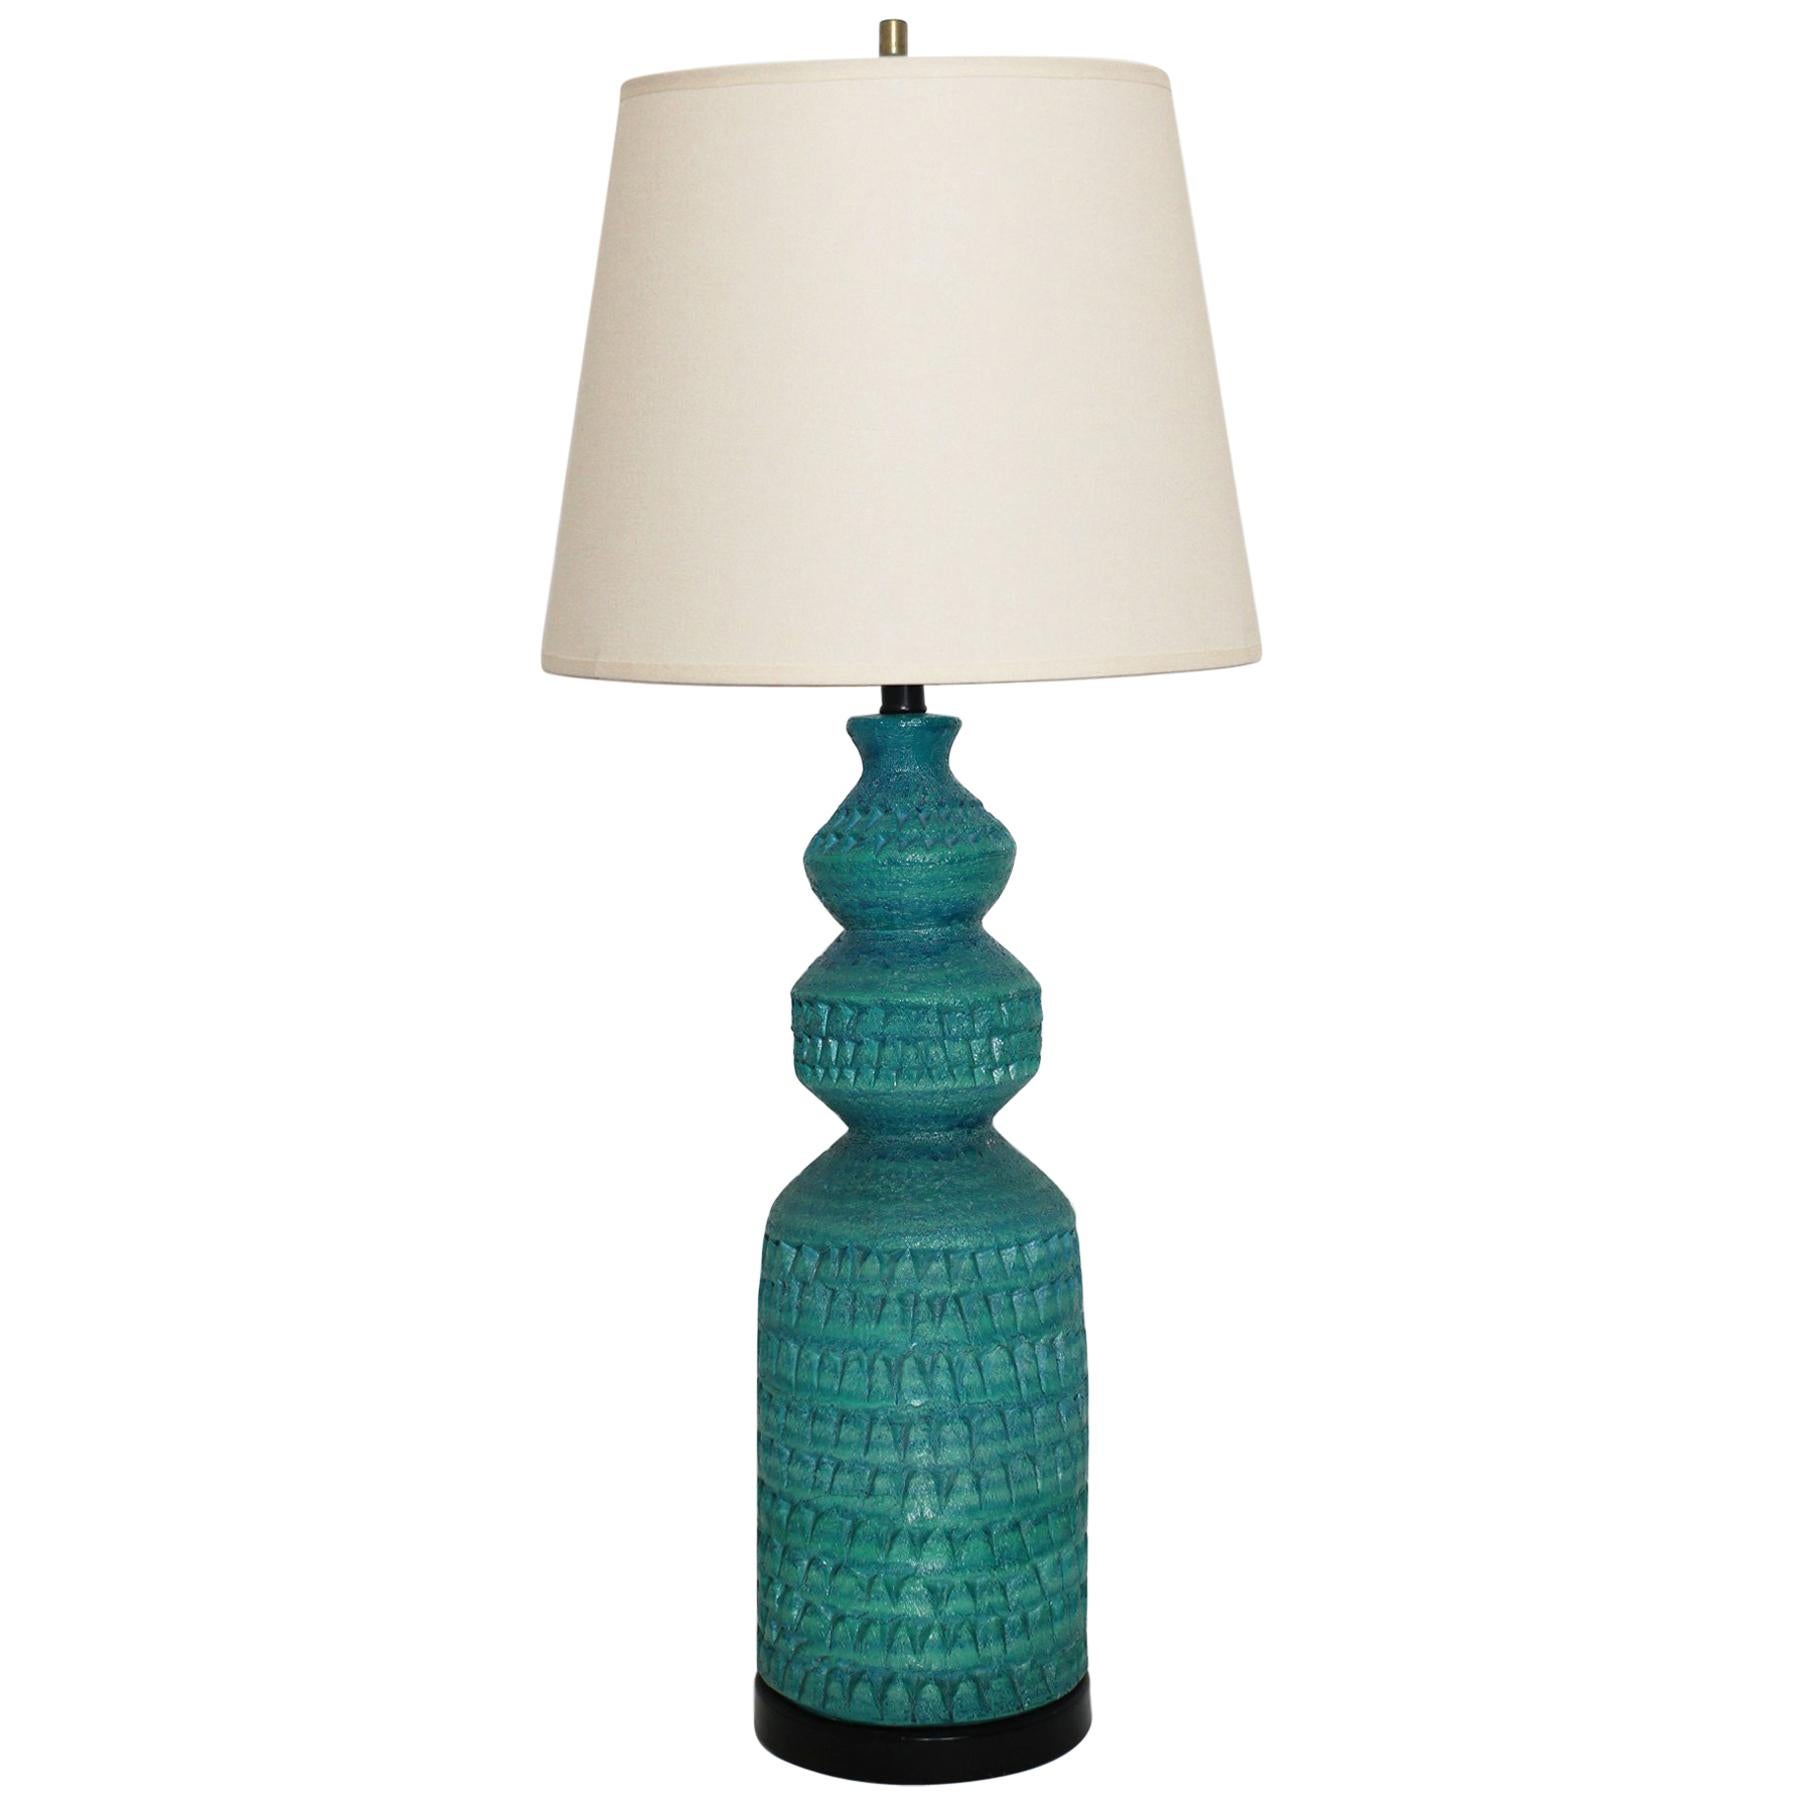 Midcentury Italian Tall Turquoise Ceramic Lamp Attributed to Alvino Bagni